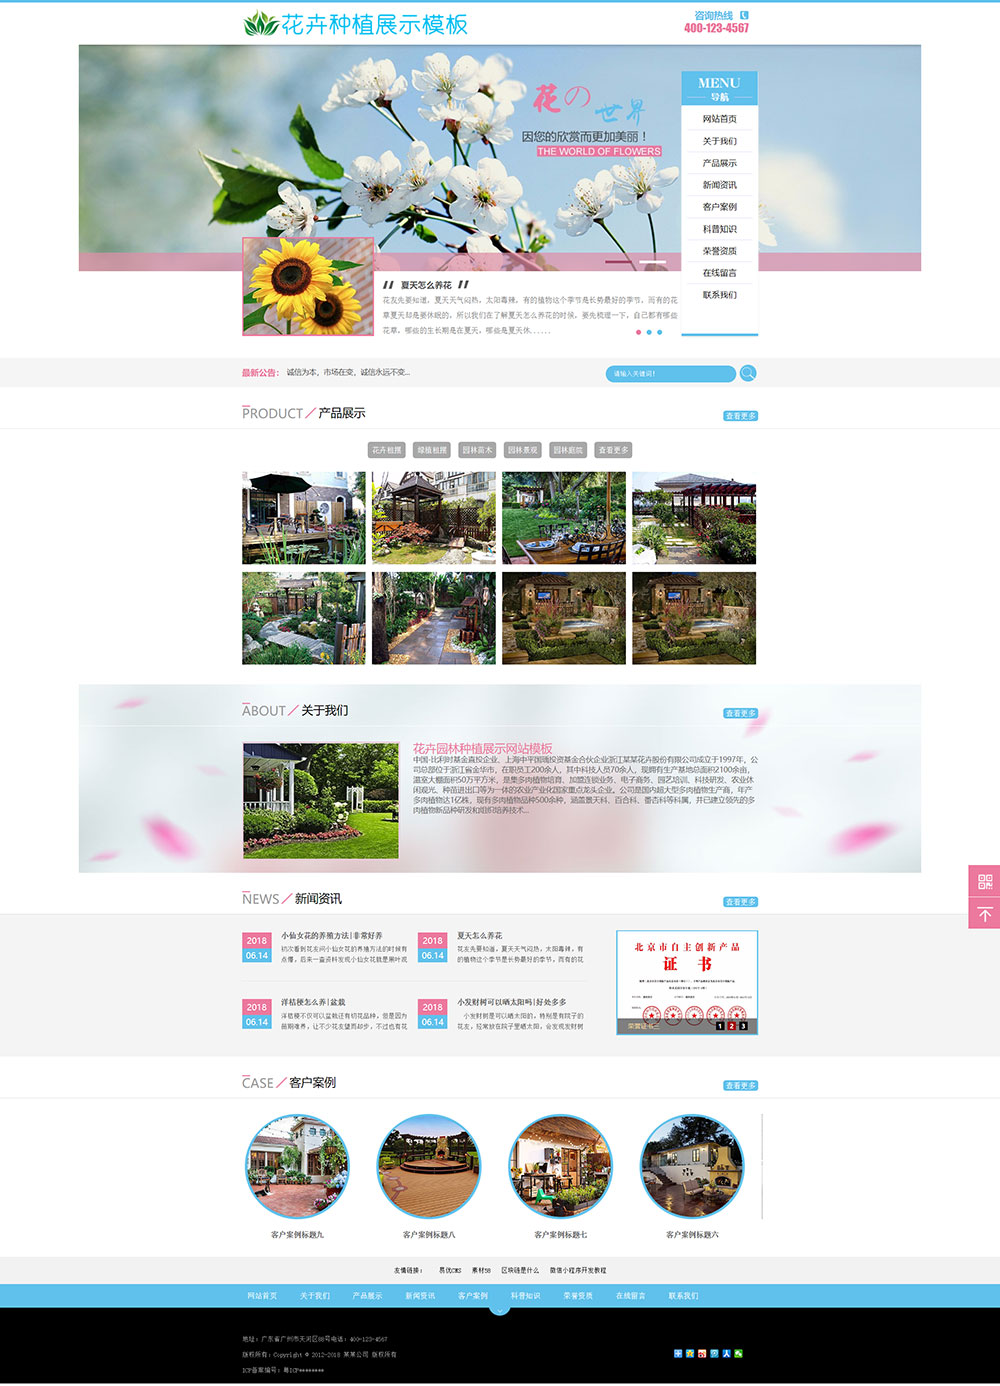 635花卉园林种植展示网站模板.jpg